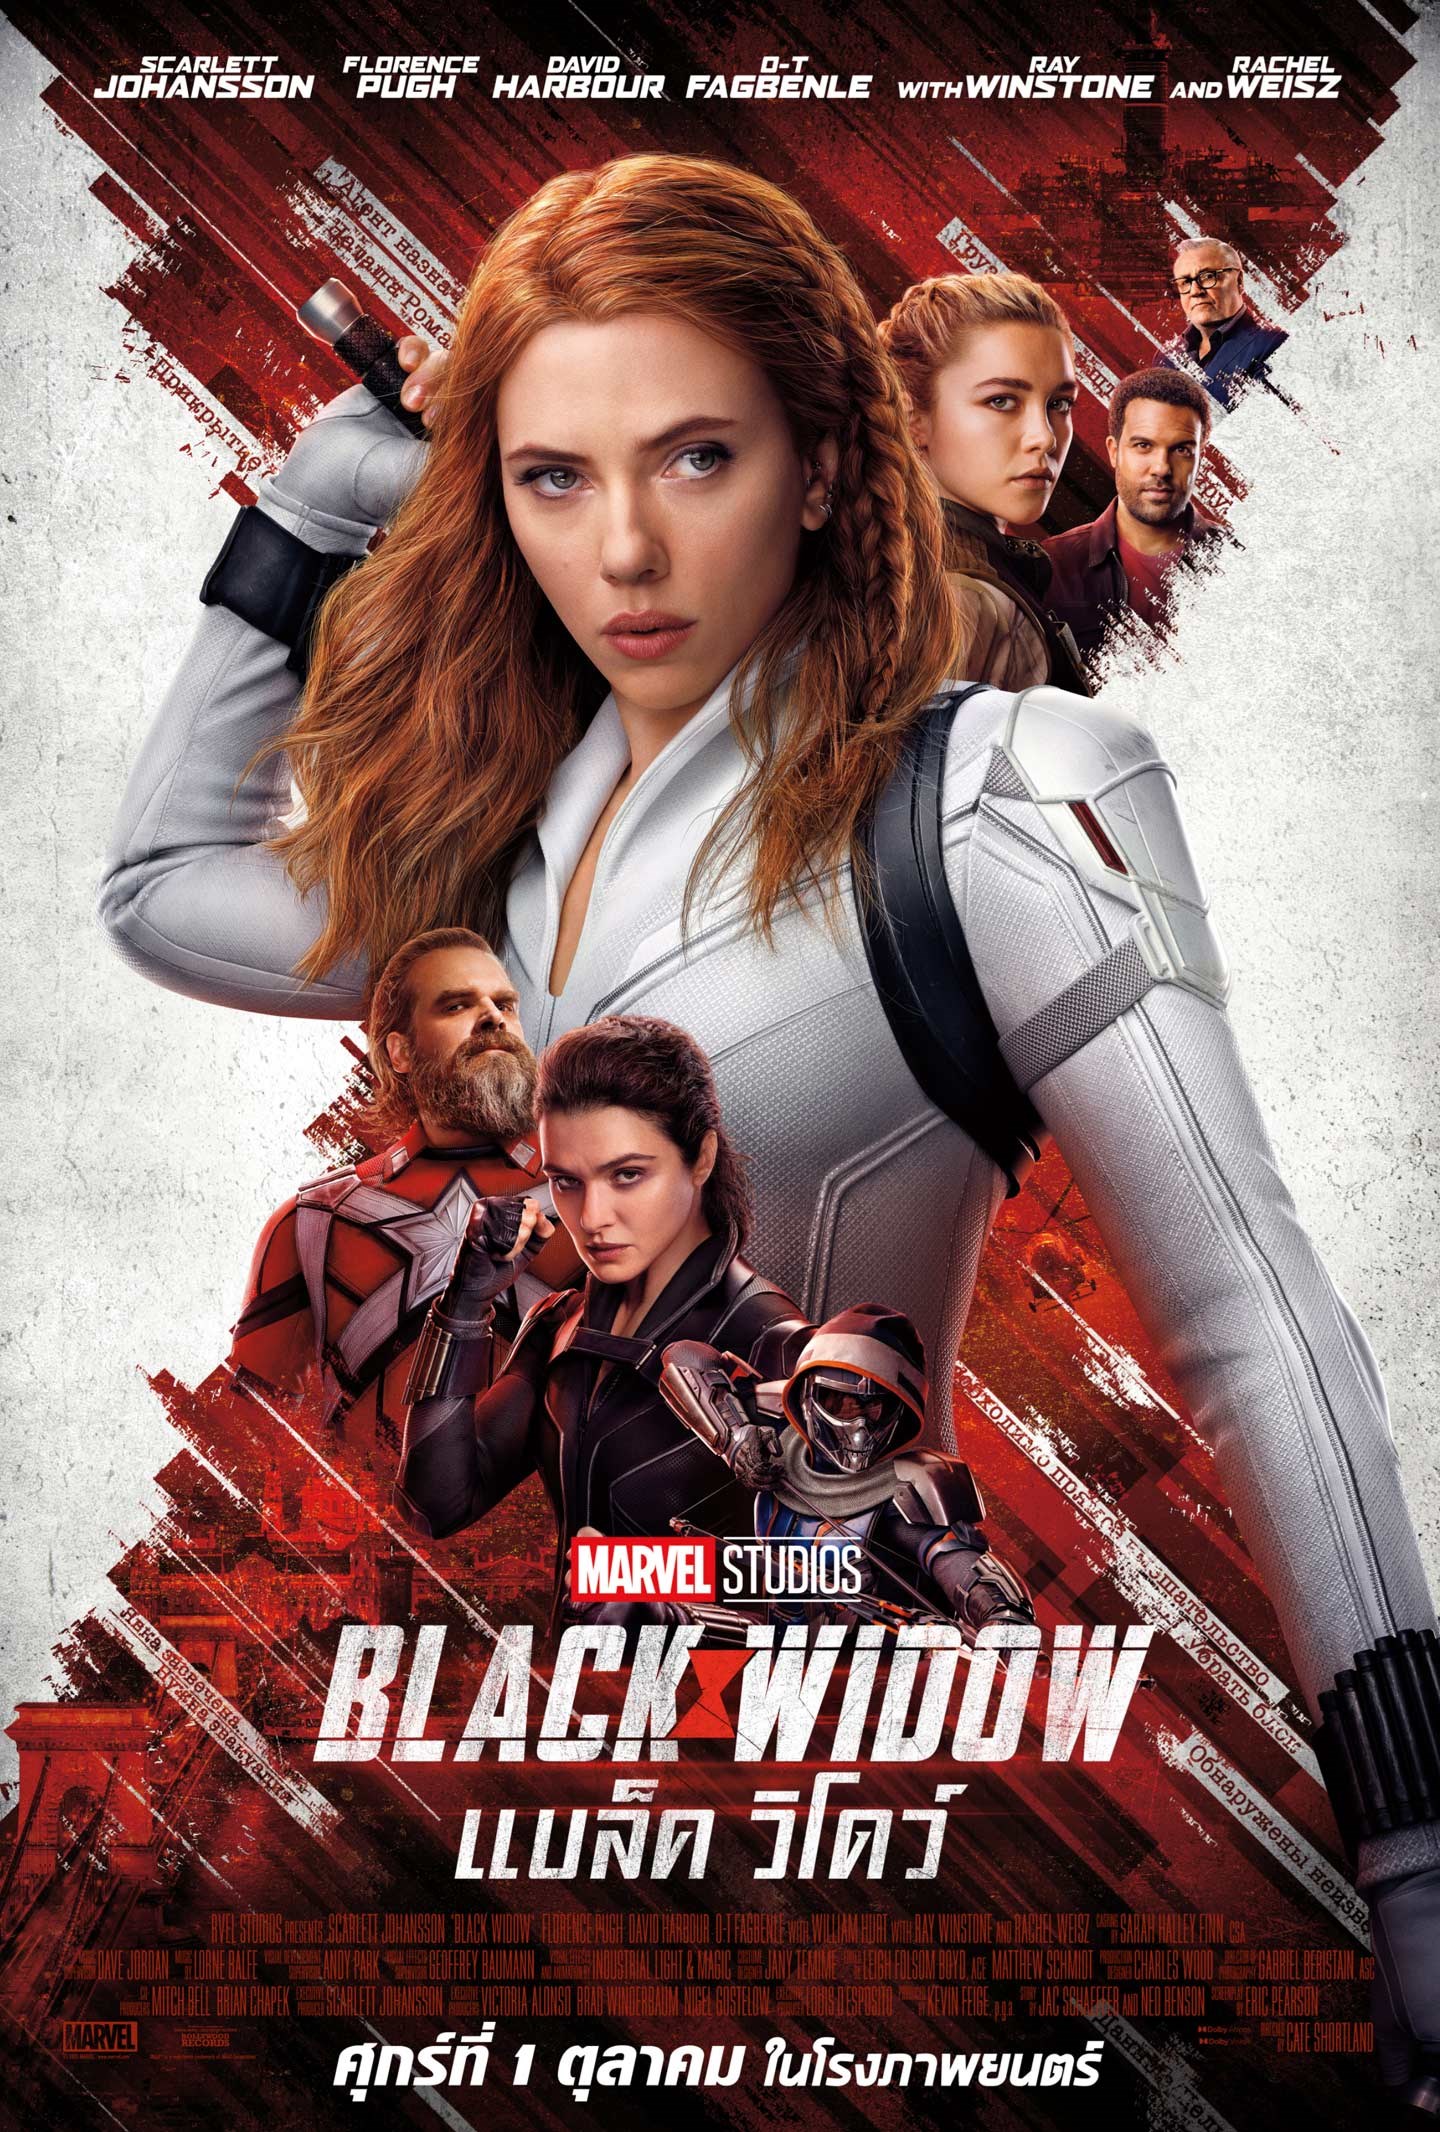 ดูหนังออนไลน์ไม่มีสะดุด Black Widow 2021 แบล็ค วิโดว์ movie2uhd